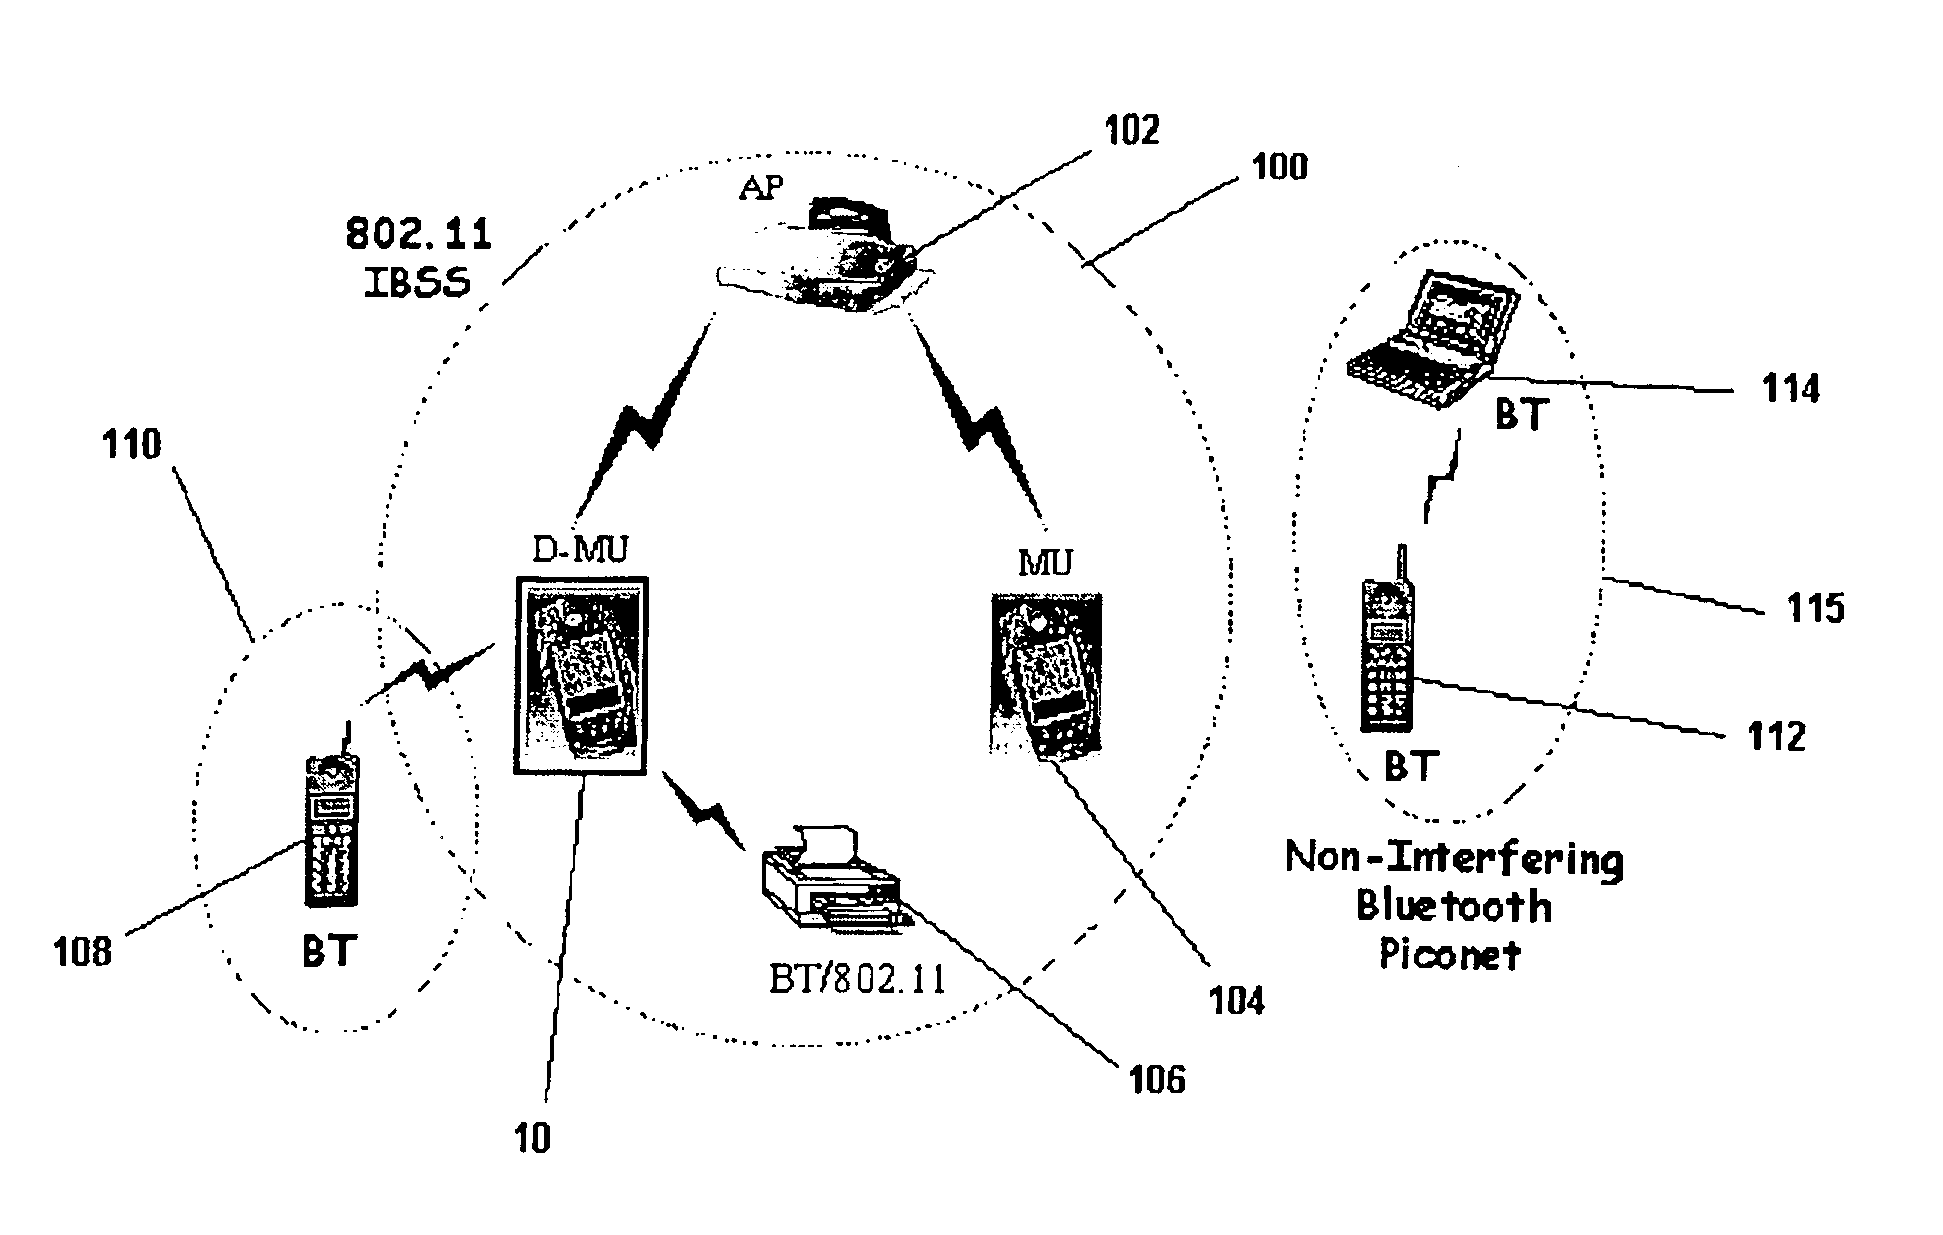 Dual mode wireless data communications